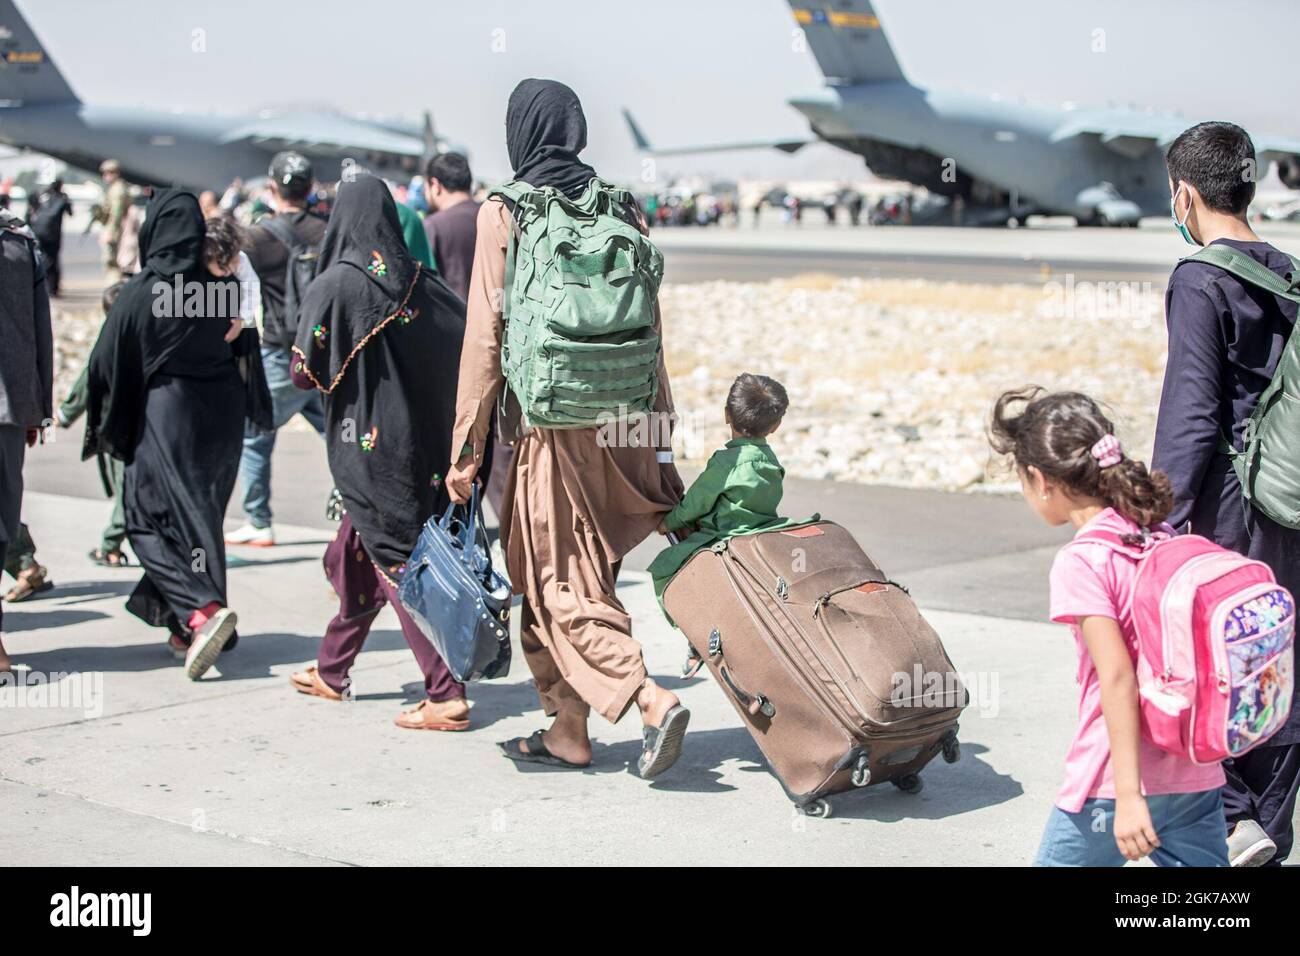 Un bambino guarda il velivolo mentre viene fatto un giro verso il suo volo durante un'evacuazione all'Aeroporto Internazionale Hamid Karzai, Kabul, Afghanistan, 24 agosto. I membri del servizio degli Stati Uniti stanno assistendo il Dipartimento di Stato con un prelievo ordinato di personale designato in Afghanistan. Foto Stock